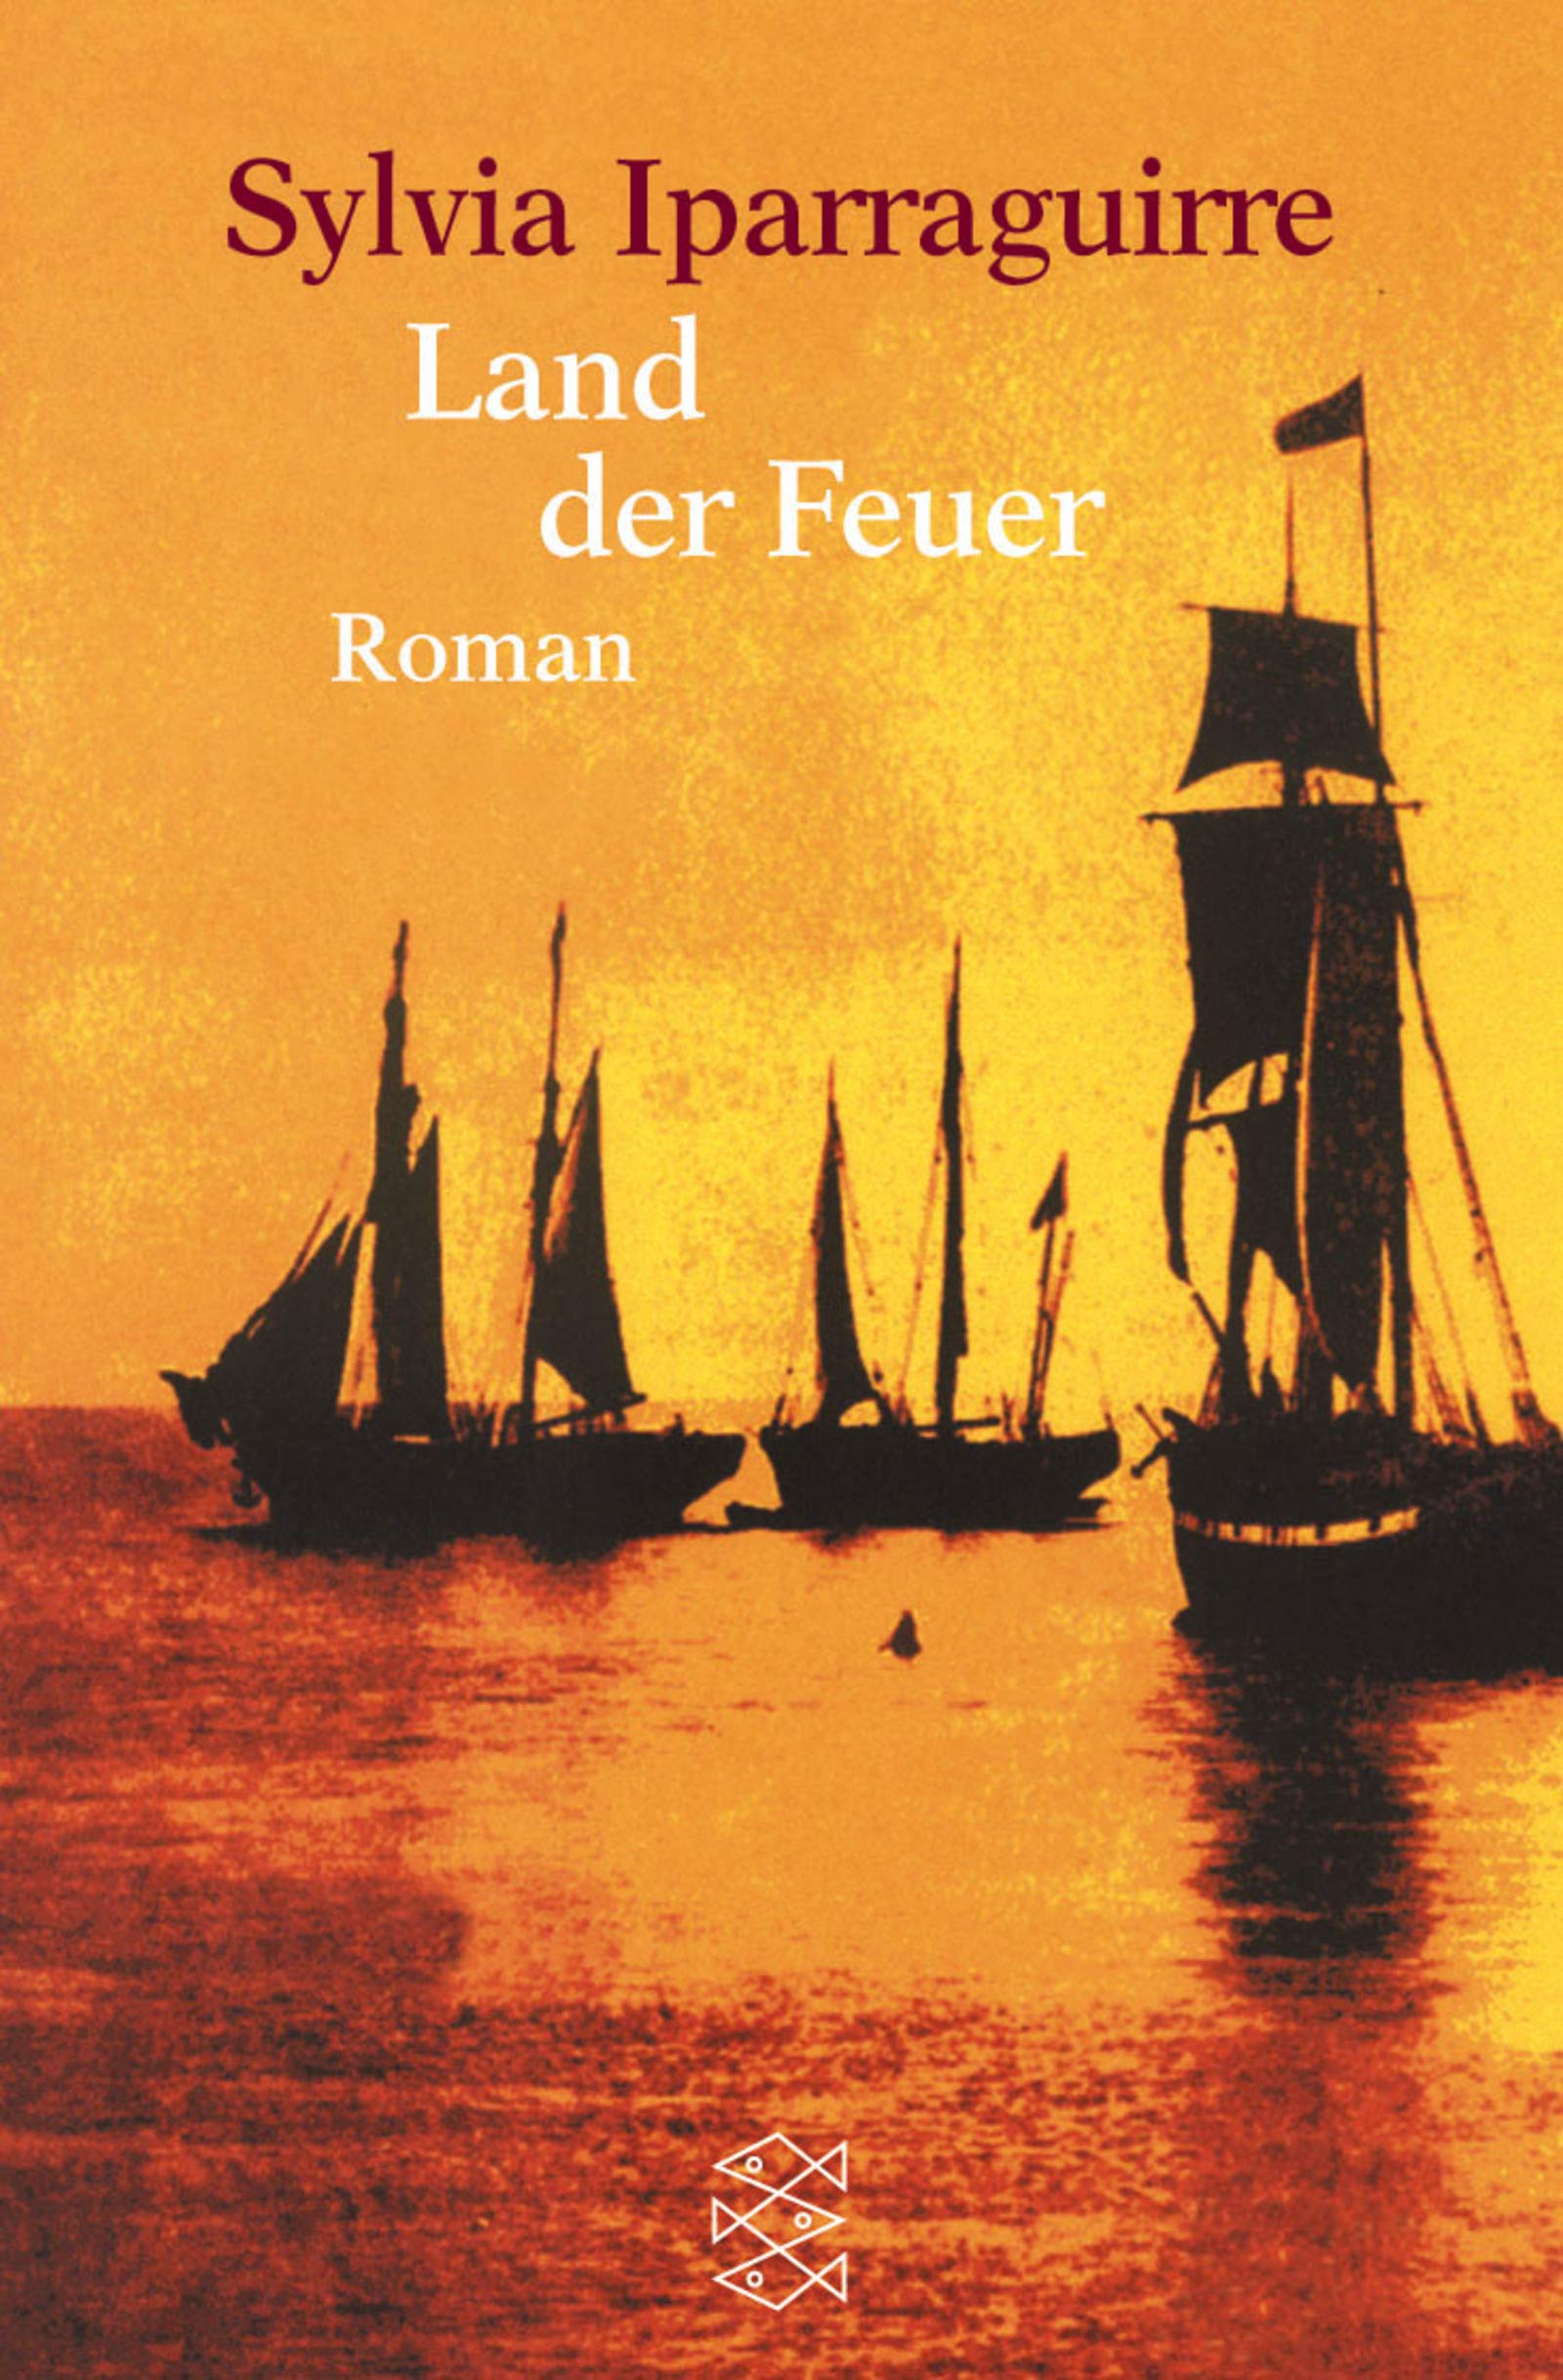 Land der Feuer : Roman. Aus dem Span. von Enno Petermann / Fischer ; 15013 - Iparraguirre, Sylvia